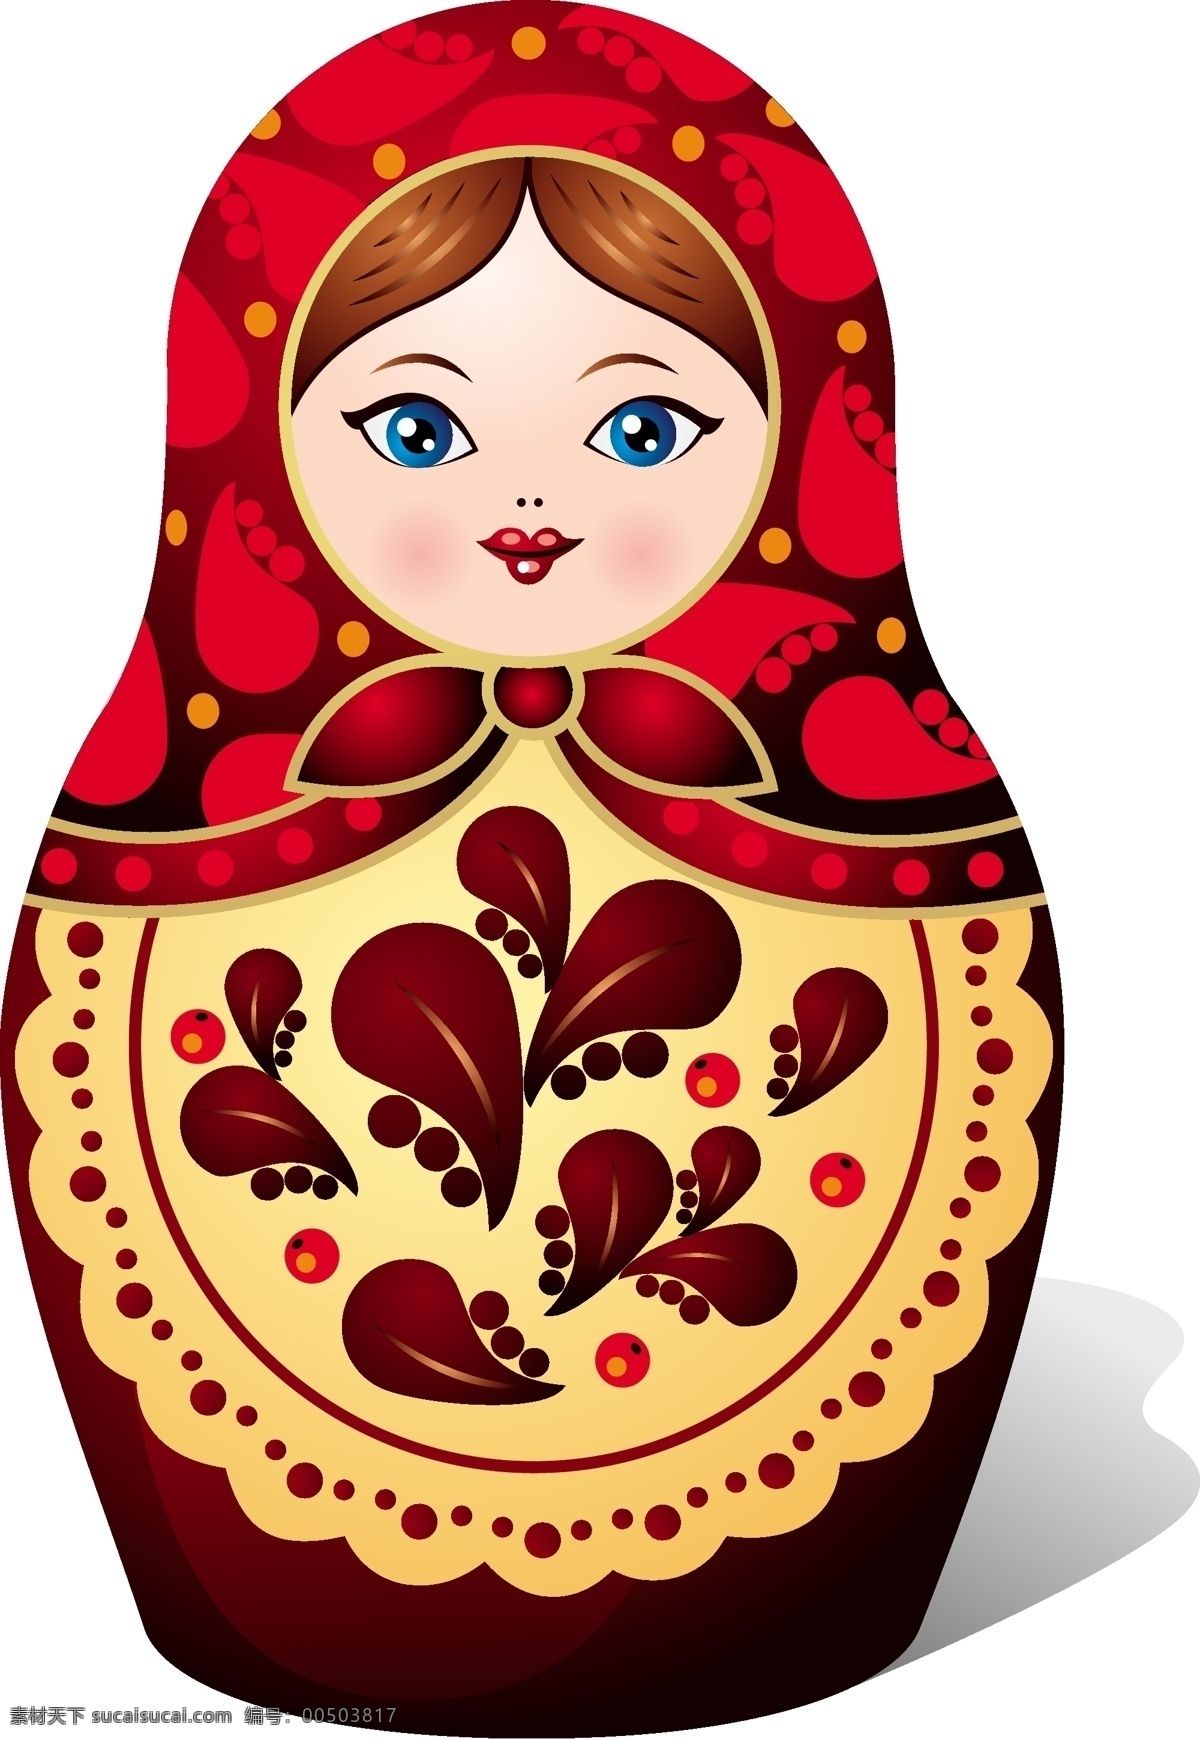 陶瓷娃娃 陶瓷 瓷人 工艺品 欧洲瓷娃娃 瓷娃娃 小玩具 玩具 彩绘 花纹 手绘花纹 传统花纹 传统工艺 生活用品 生活百科 矢量